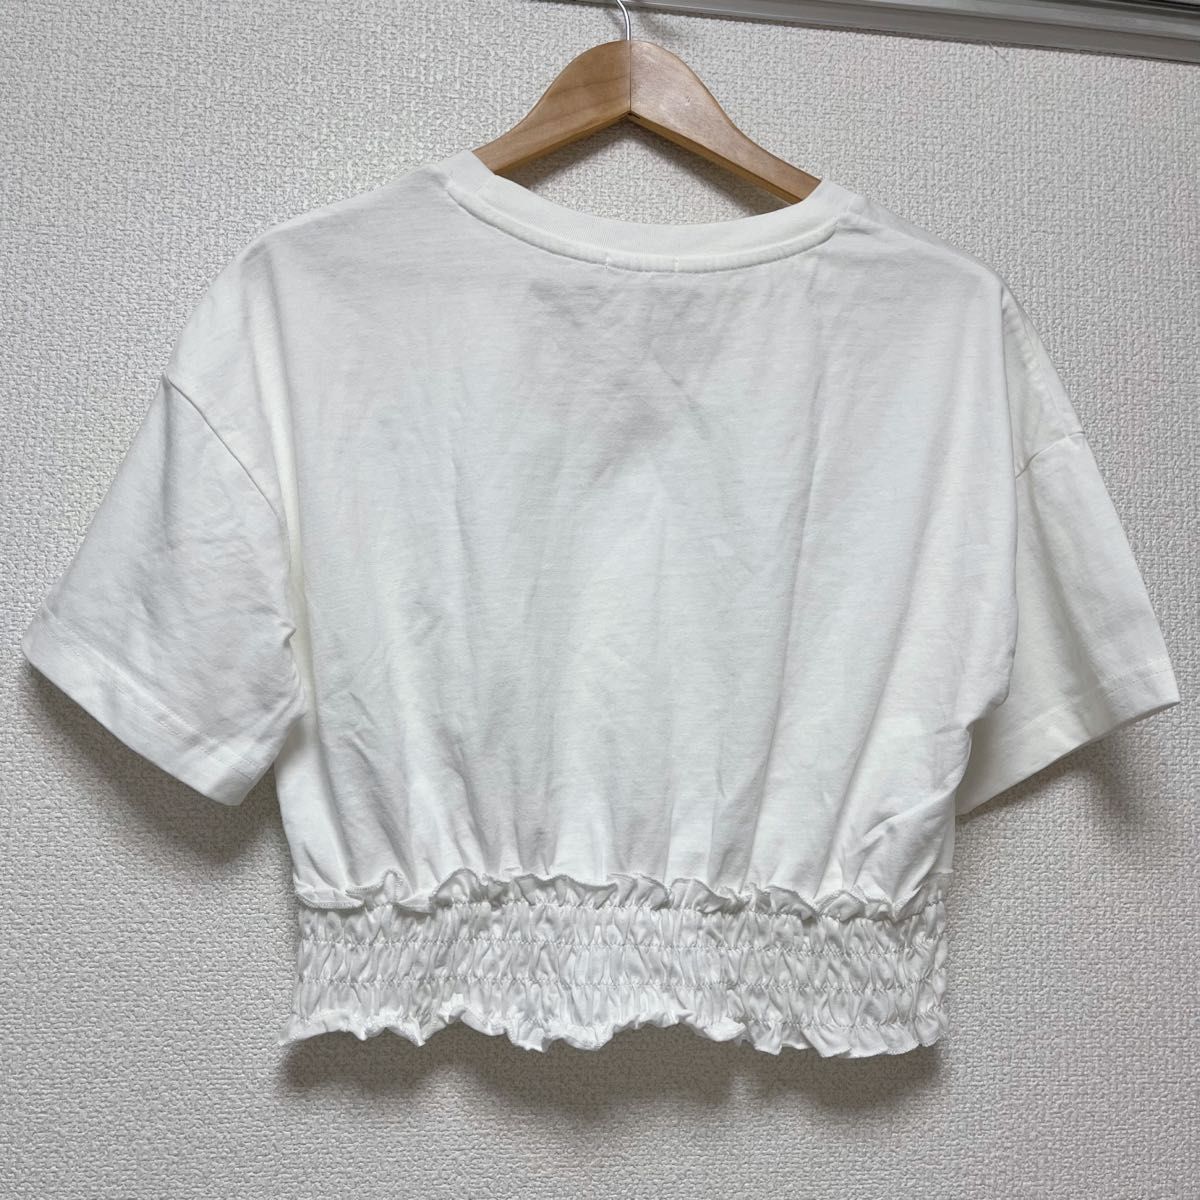 【美品】 gu ジーユー ウエストシャーリングクロップドT Tシャツ トップス ショート丈 5分袖 白 ホワイト Mサイズ